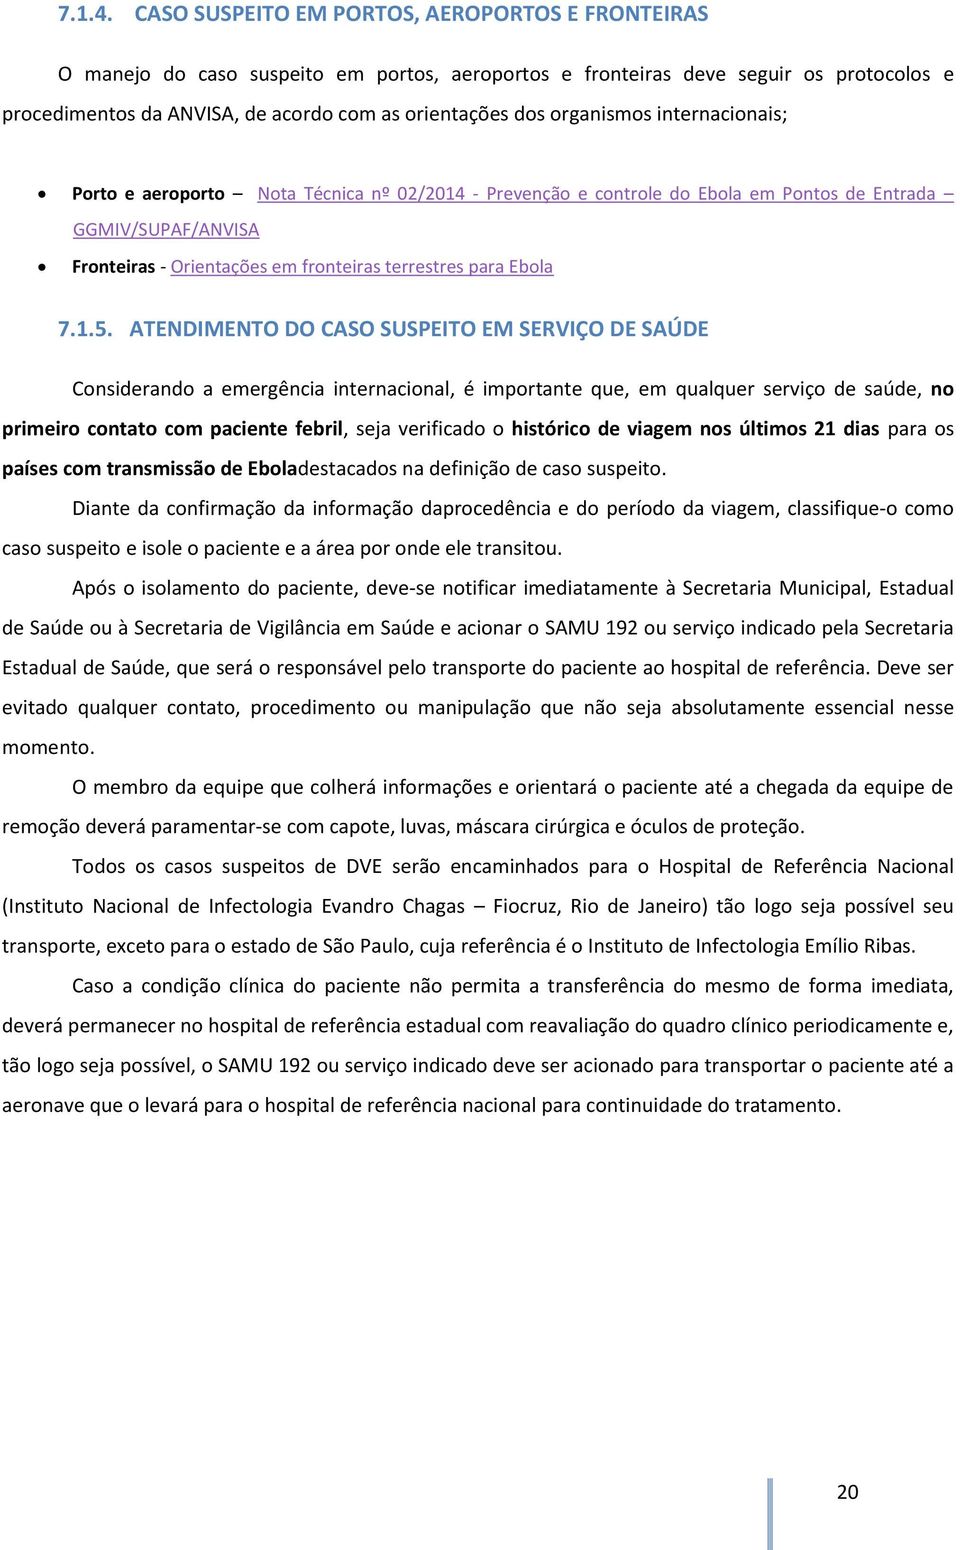 organismos internacionais; Porto e aeroporto Nota Técnica nº 02/2014 - Prevenção e controle do Ebola em Pontos de Entrada GGMIV/SUPAF/ANVISA Fronteiras - Orientações em fronteiras terrestres para